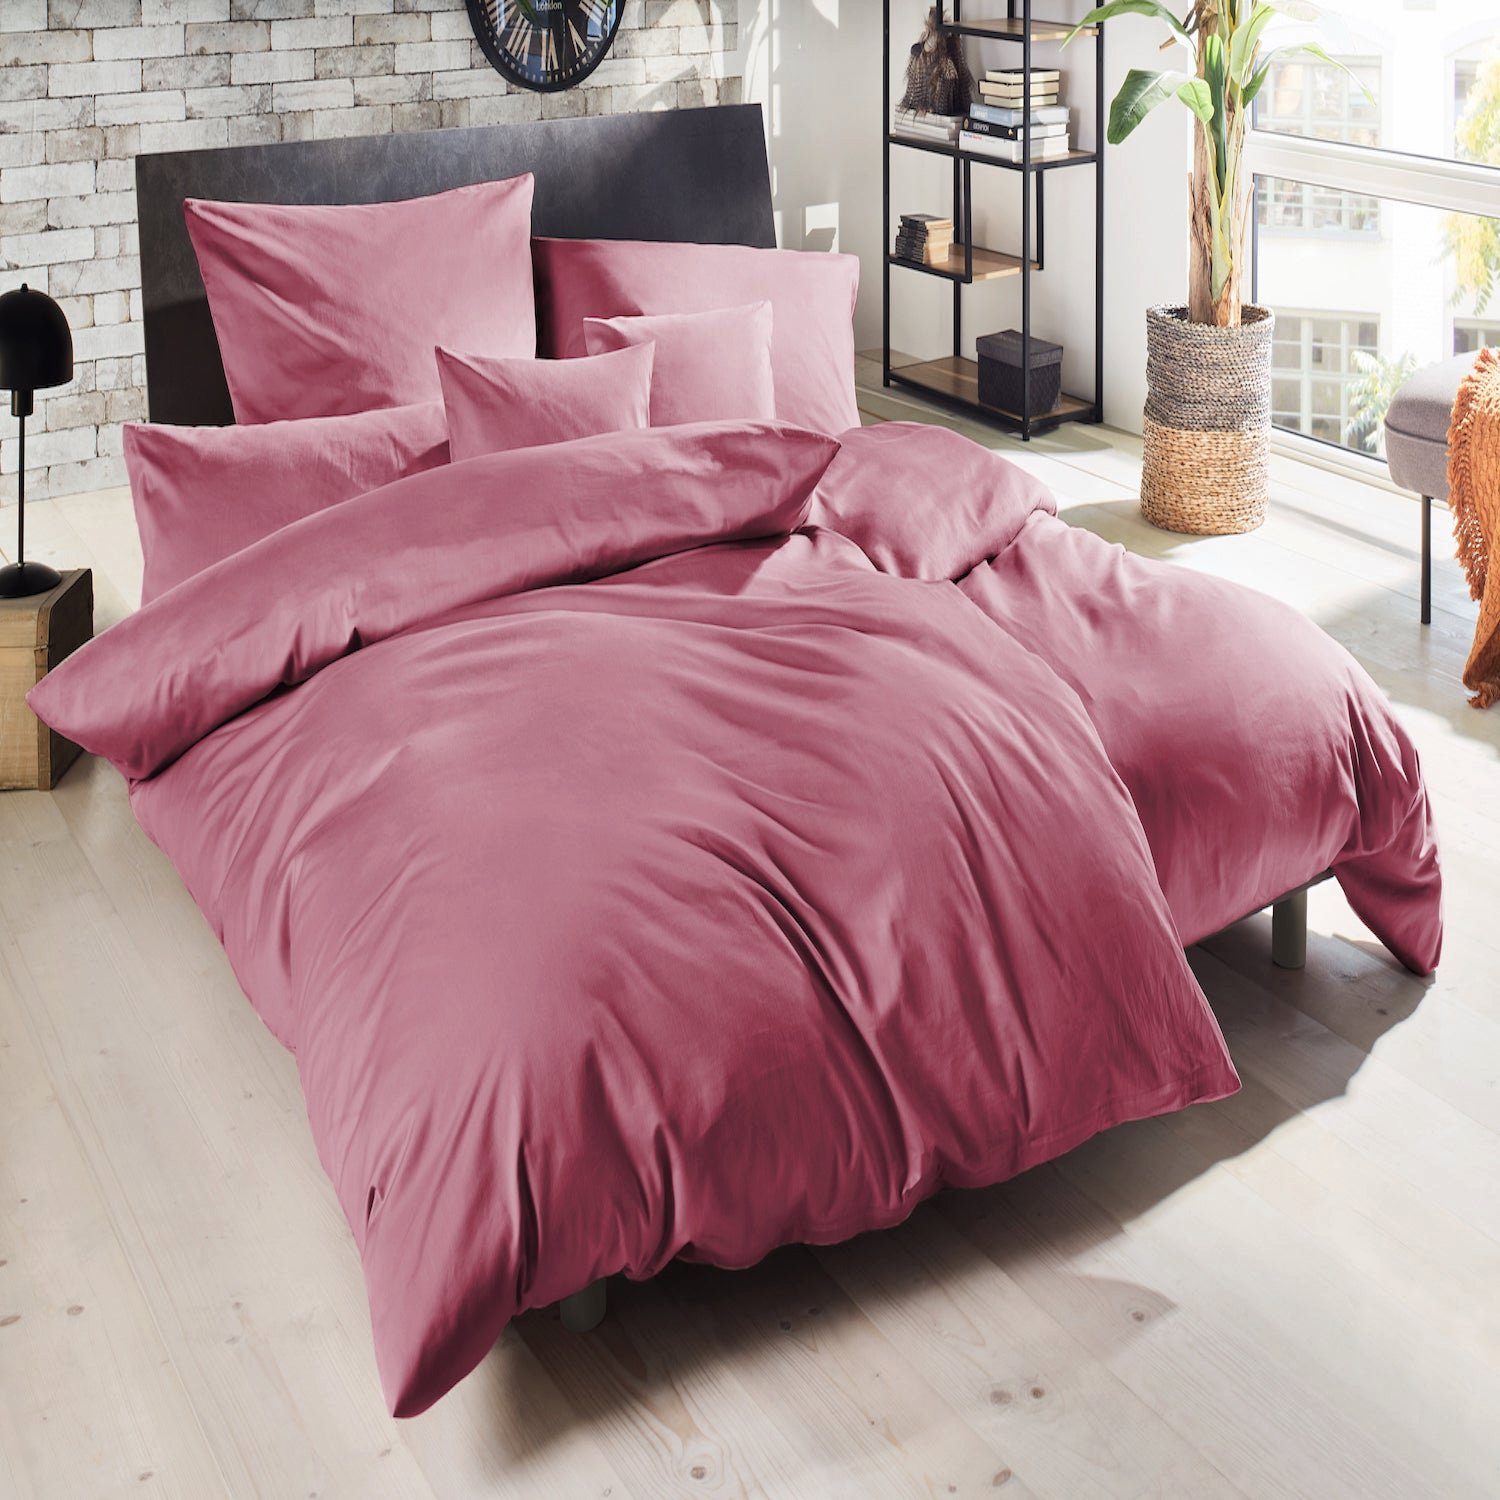 Giantore Luxus 100% Frühlingsbettbezug, Bettwäsche Bettwäsche aus - Baumwolle/ Satin